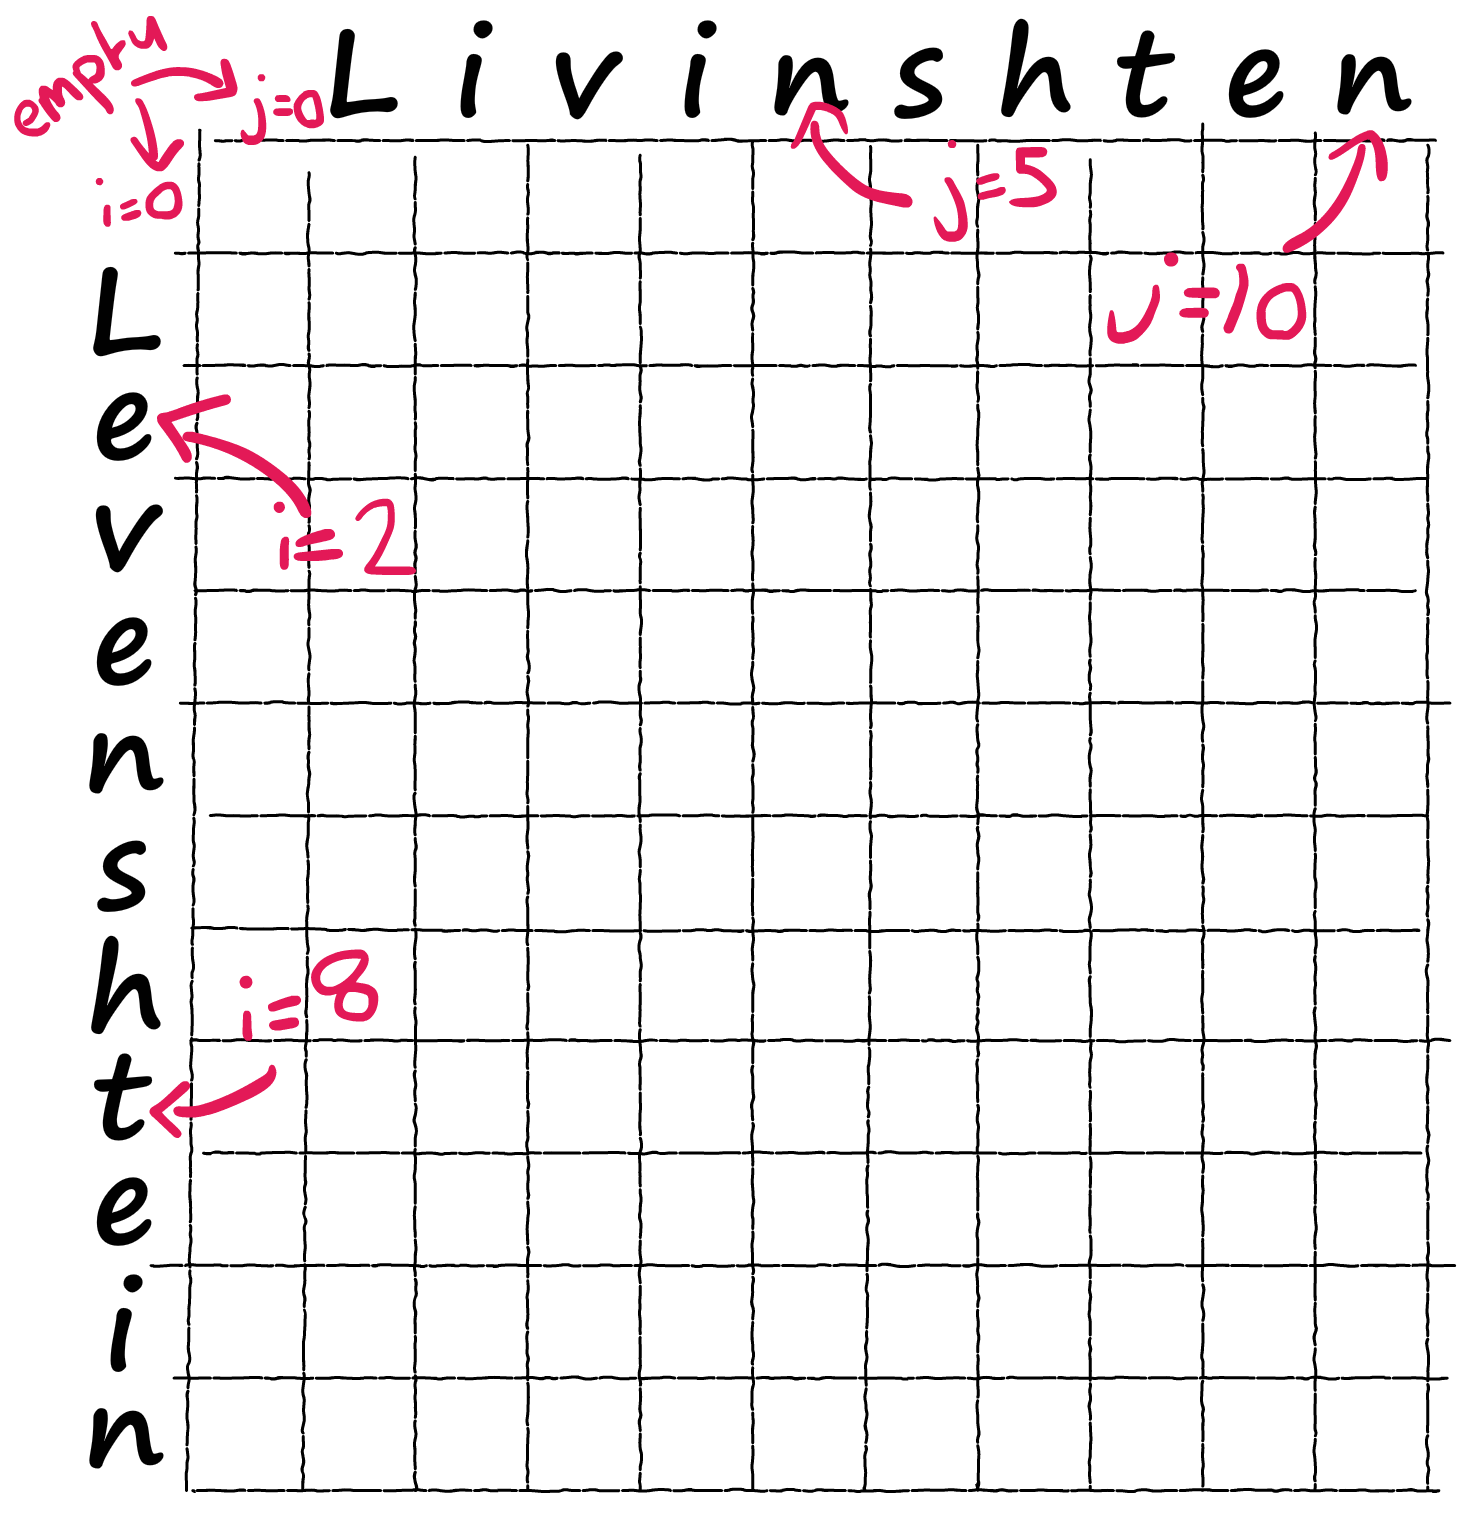 Пустая матрица Вагнера-Фишера — мы будем работать с ней для вычисления расстояния Левенштейна между 'Levenshtein' и 'Livinshten'.